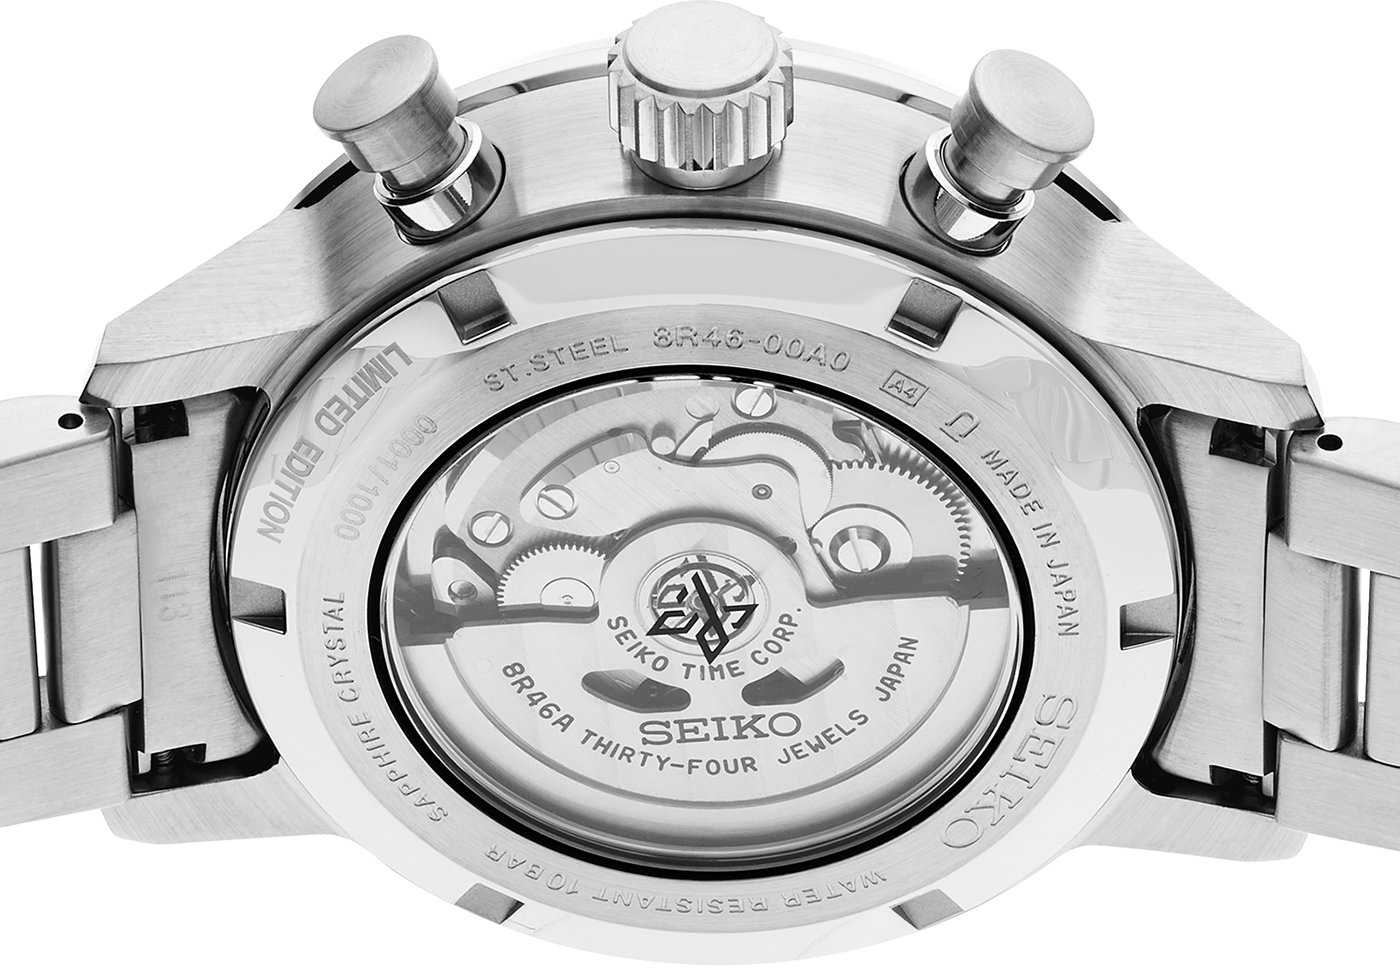 Seiko возрождает торговую марку Speedtimer новыми часами с автоматическим хронографом